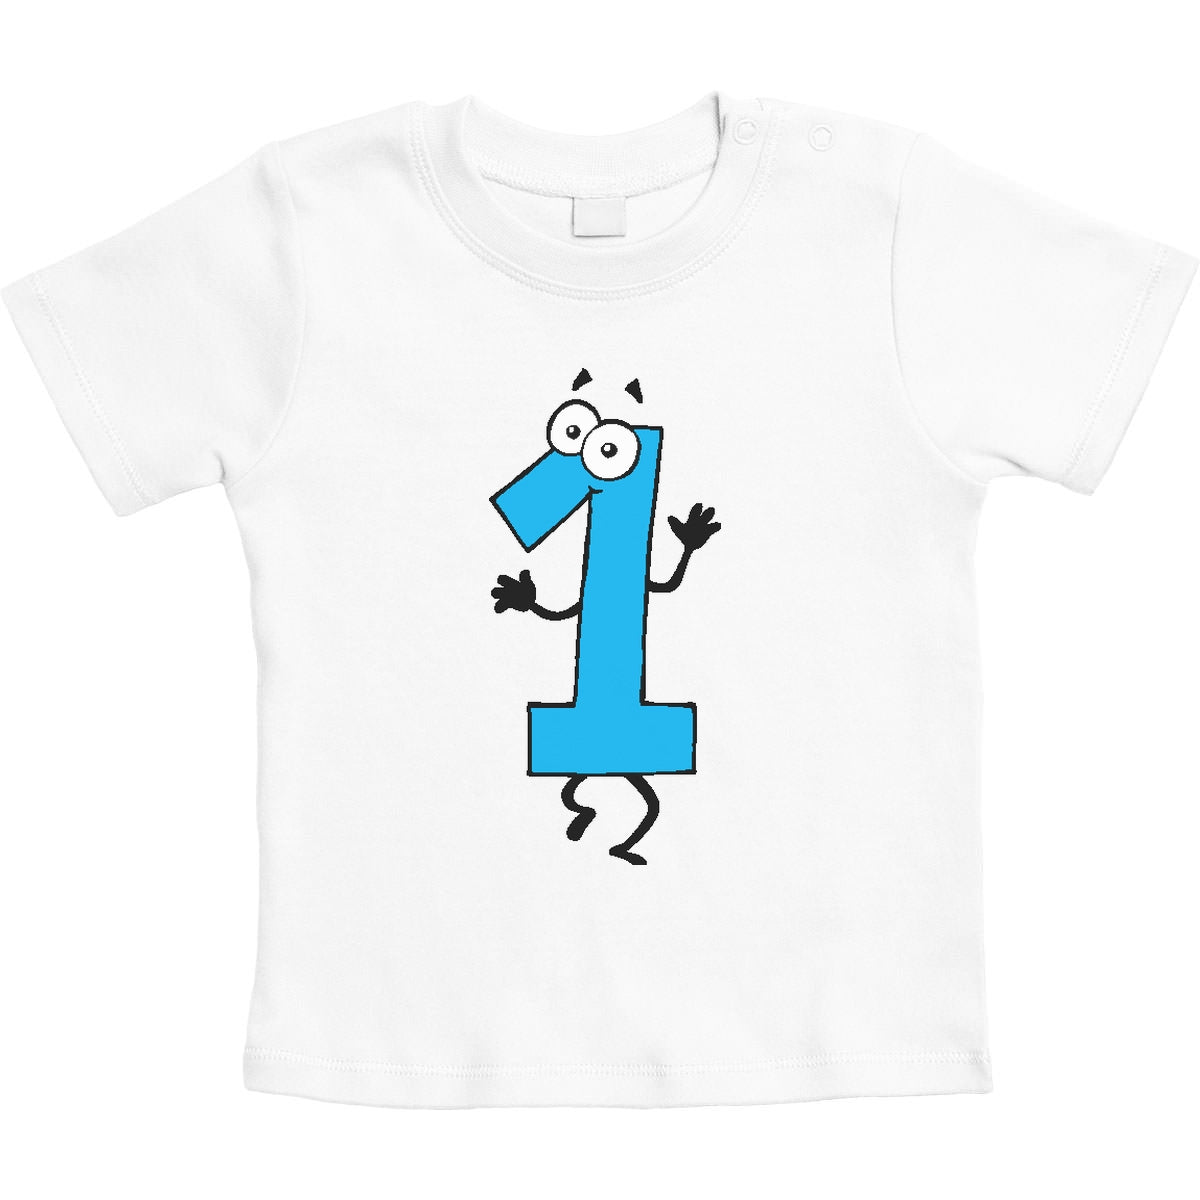 Ich Bin 1 - Süsses Geschenk zum Ersten Geburtstag Unisex Baby T-Shirt Gr. 66-93